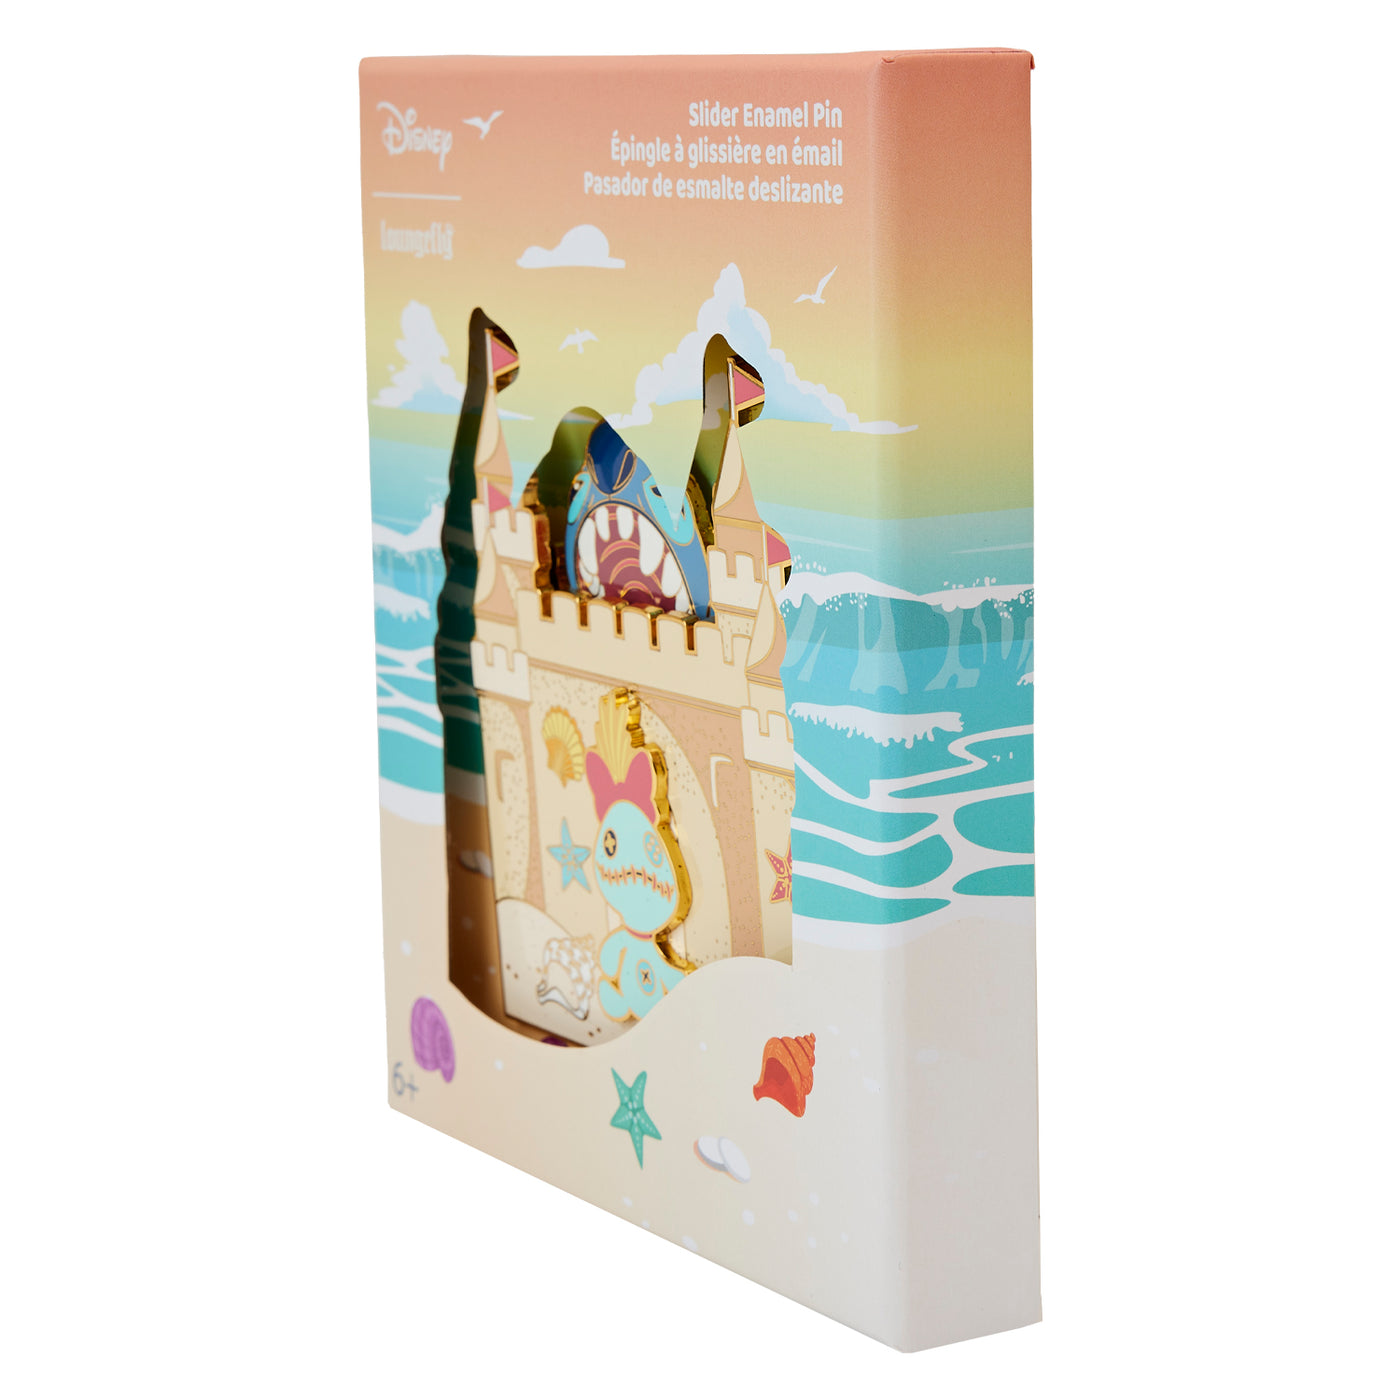 Disney Lilo & Stitch Sandcastle Beach Surprise 3" Collector Box Limited Edition Pin